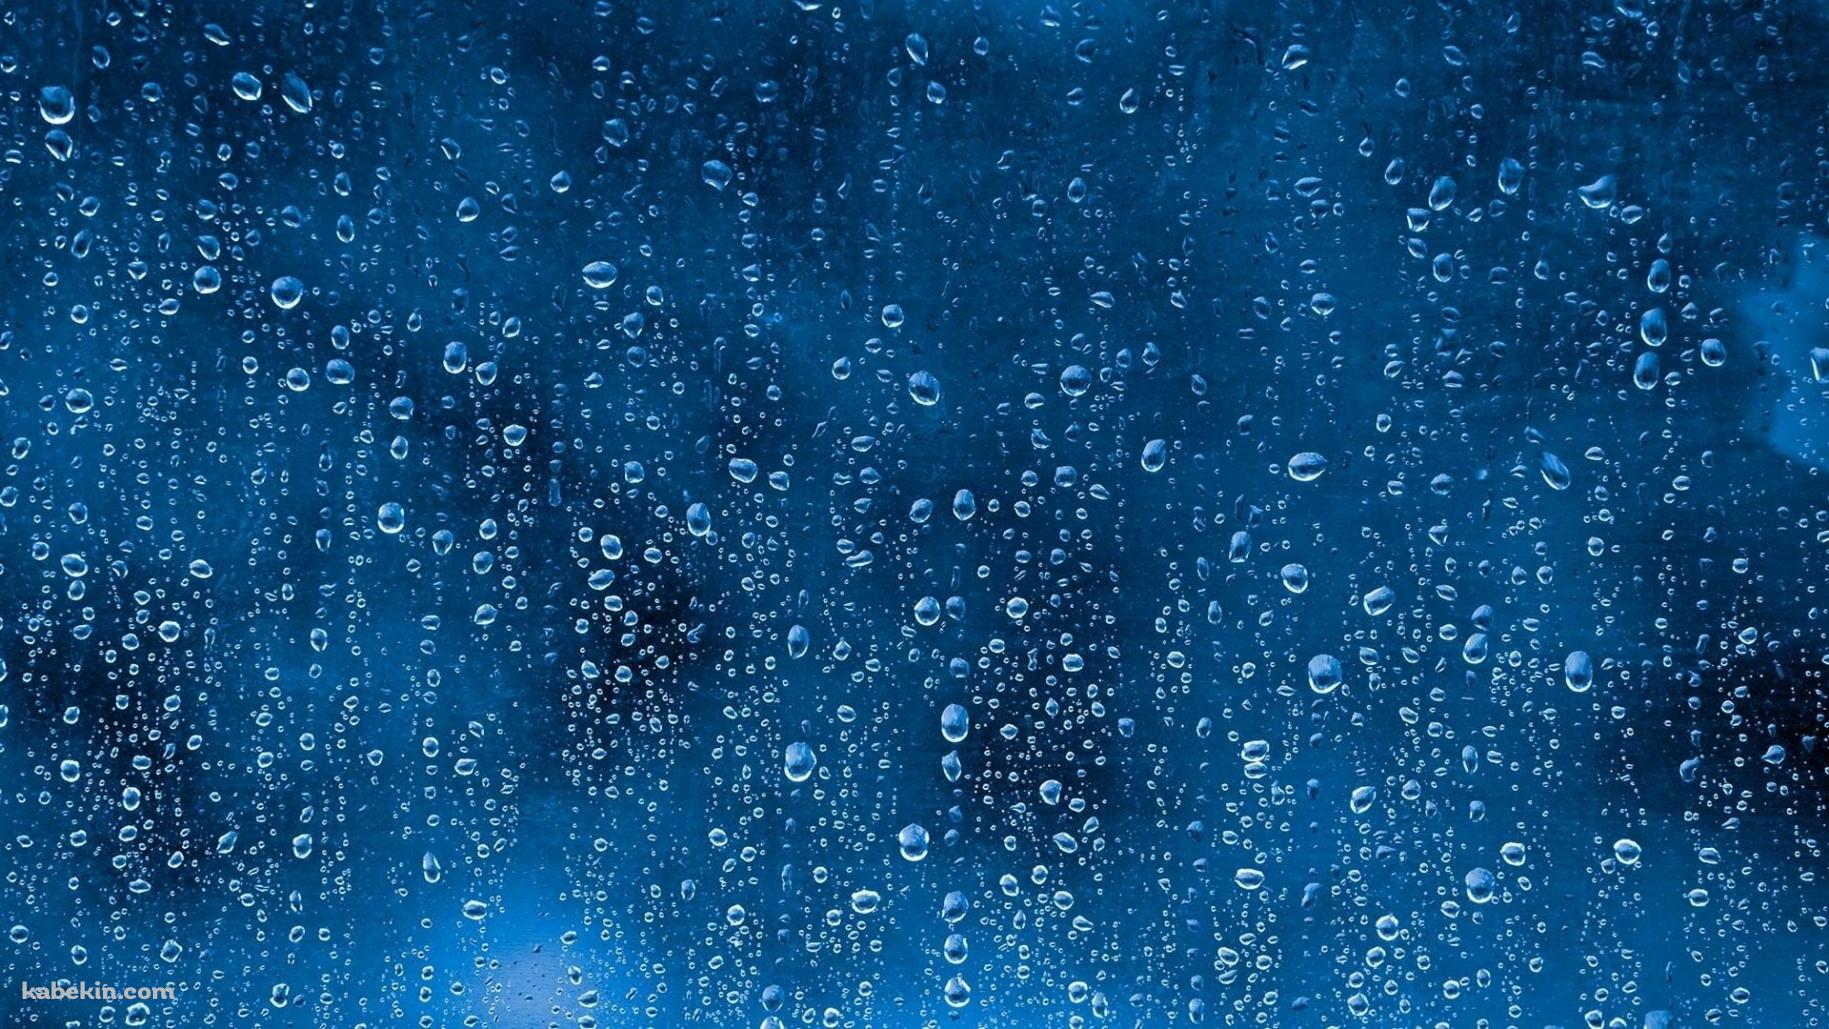 嵐の後の雨の水滴の壁紙(1829px x 1029px) 高画質 PC・デスクトップ用